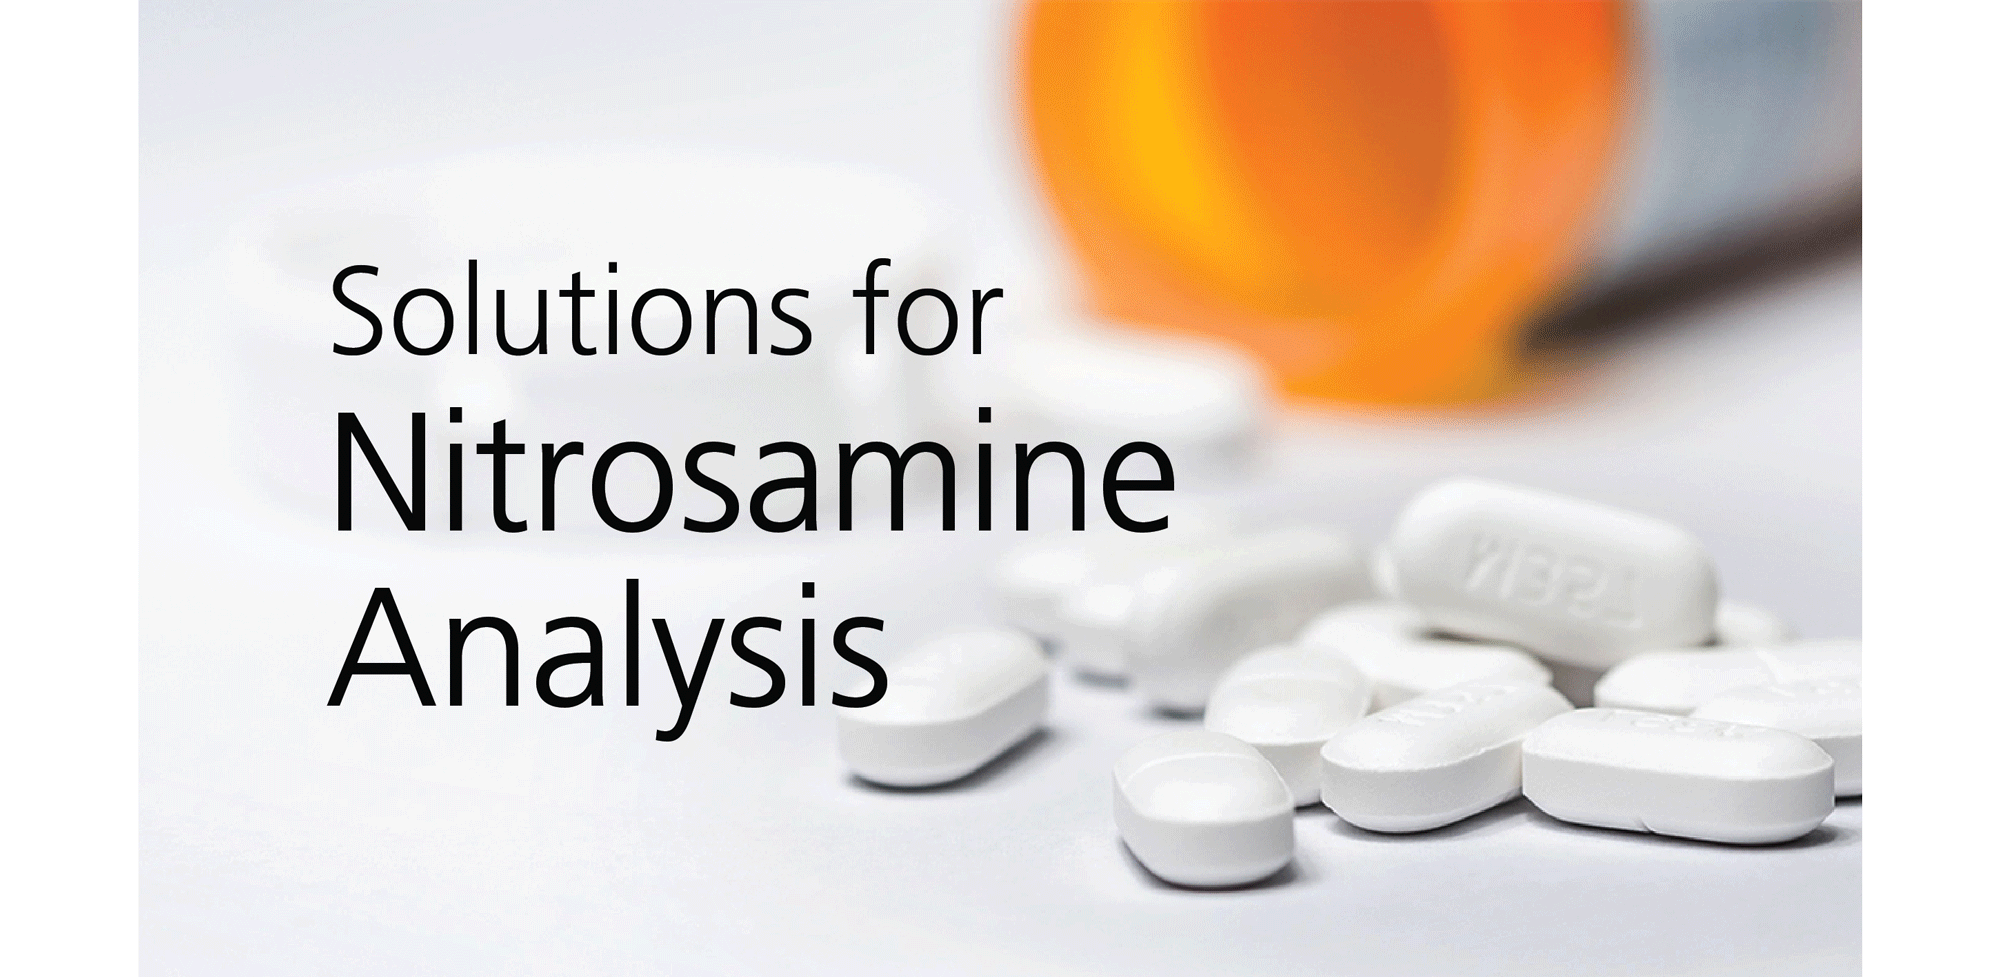 Solutions for Nitrosamine Analysis